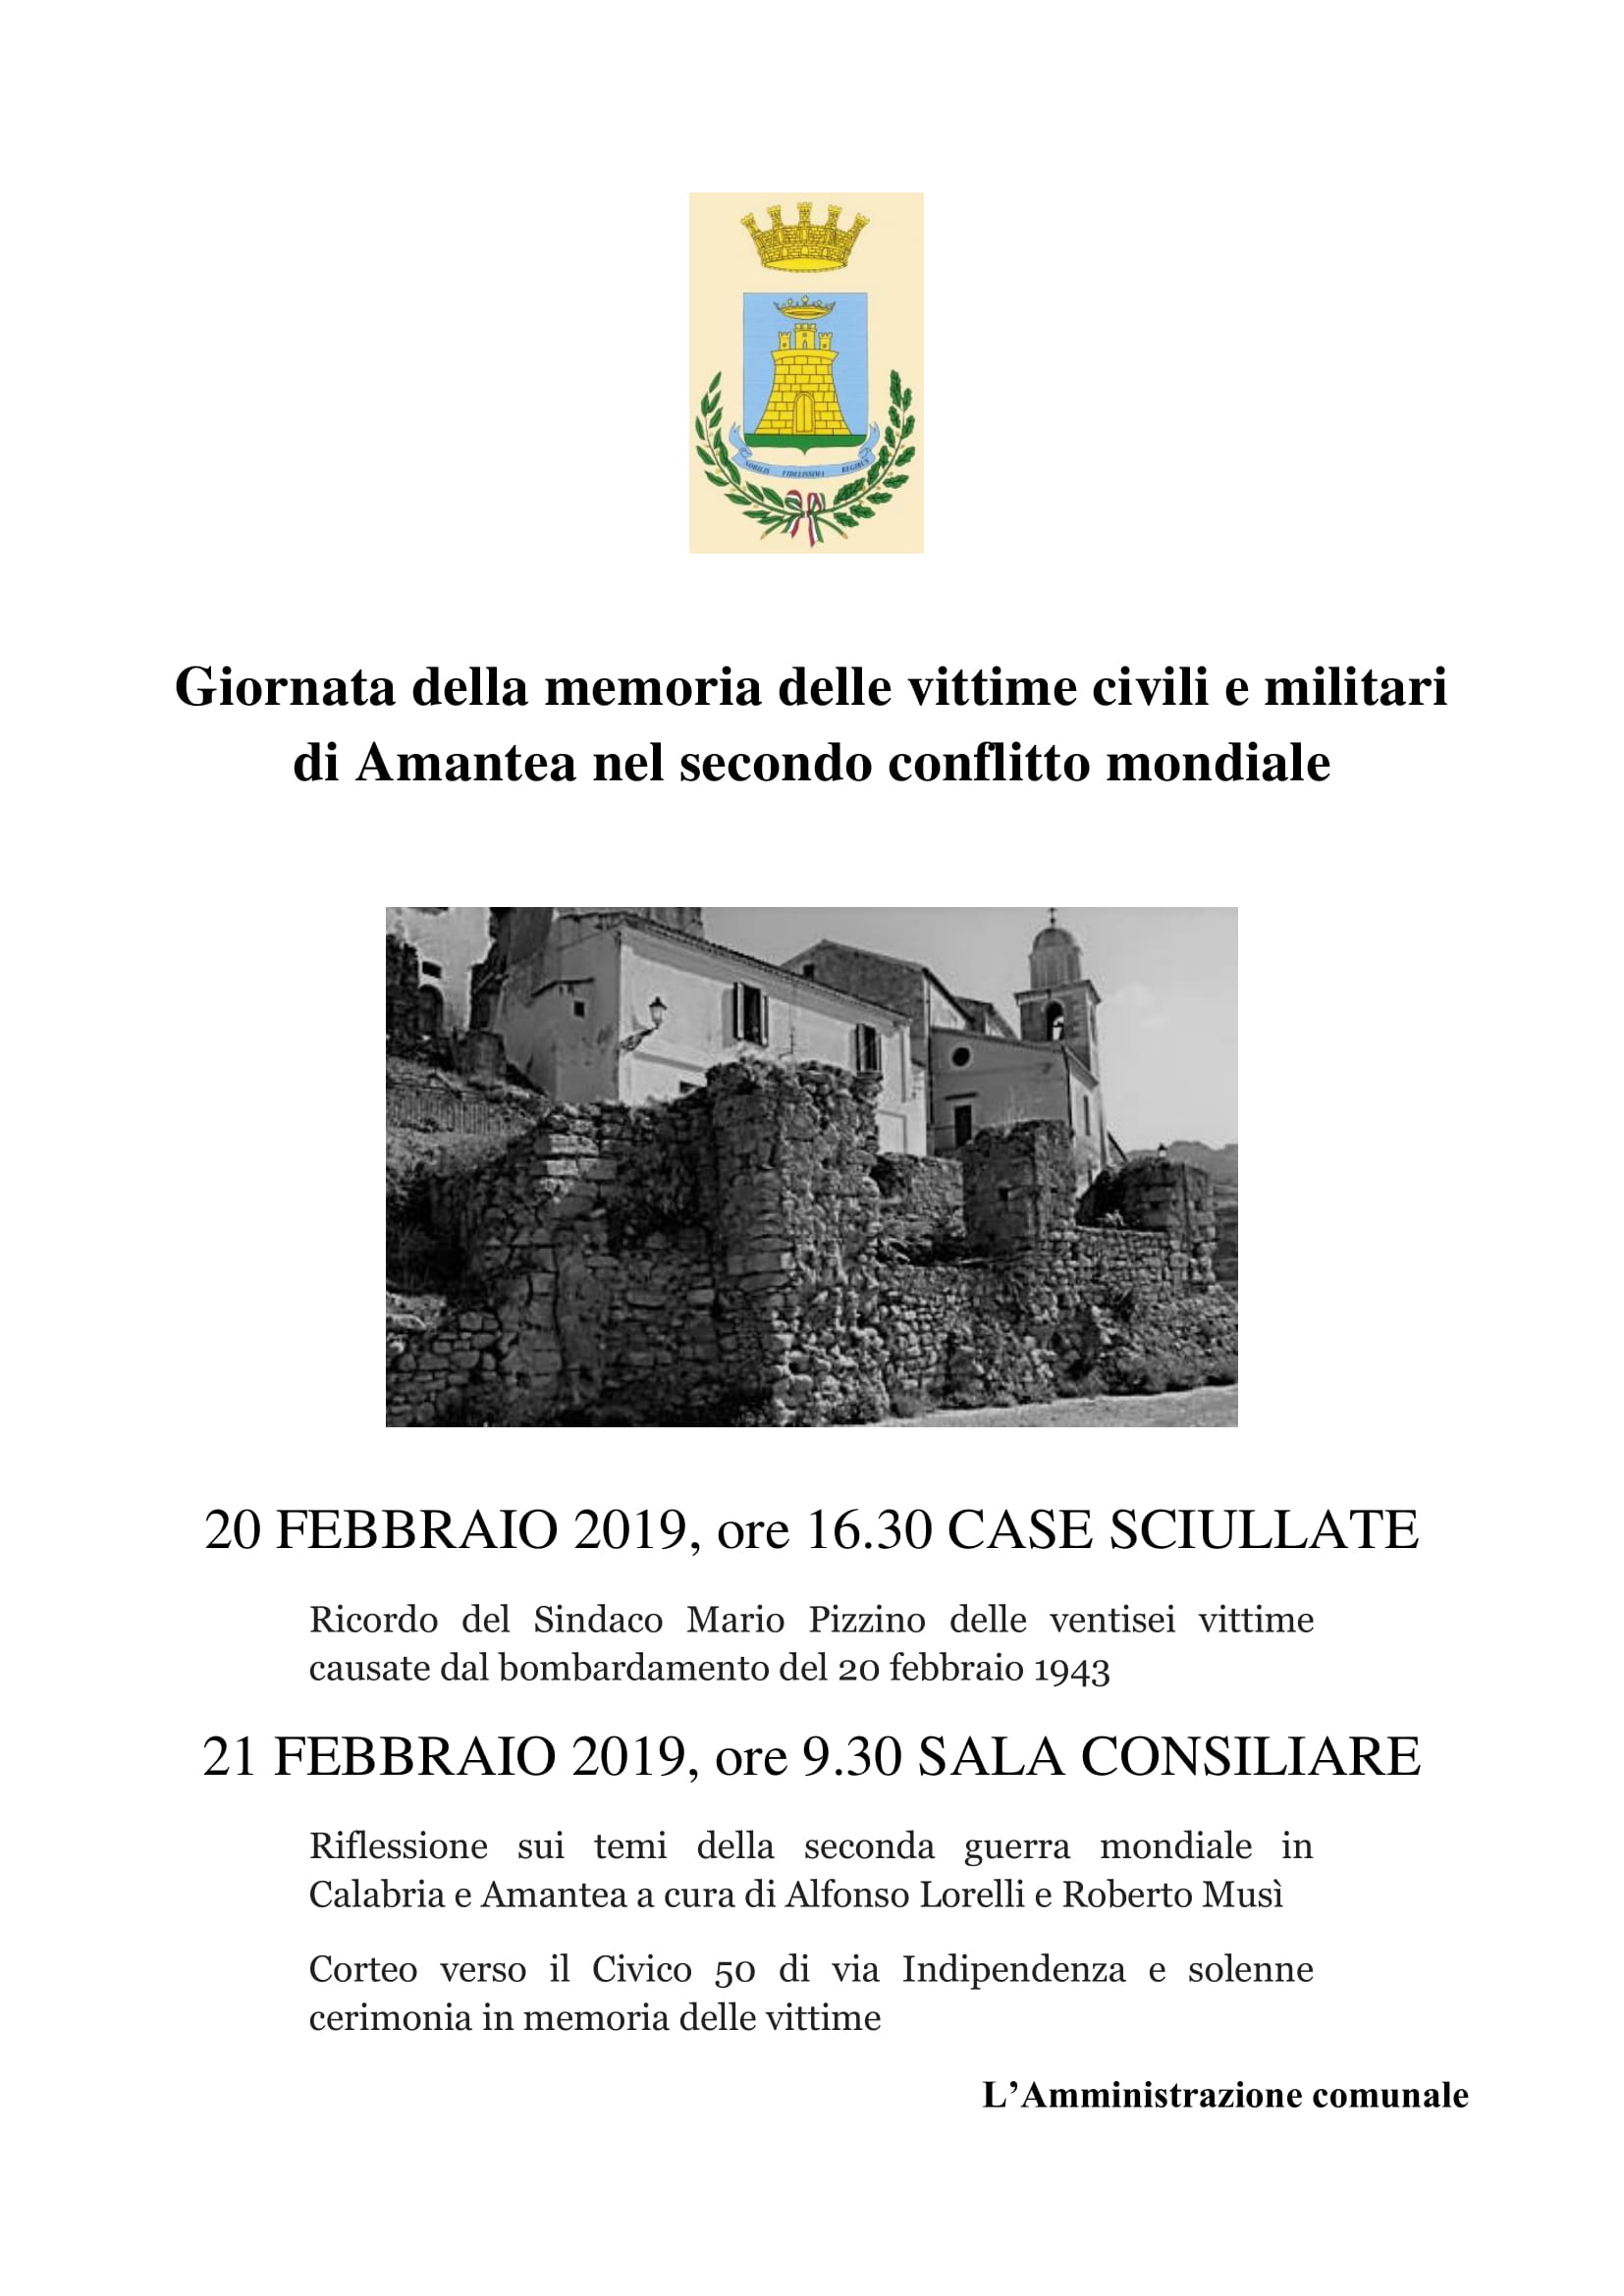 Giornata della memoria delle vittime civili e militari di Amantea nel secondo conflitto mondiale – 20 febbraio 2019